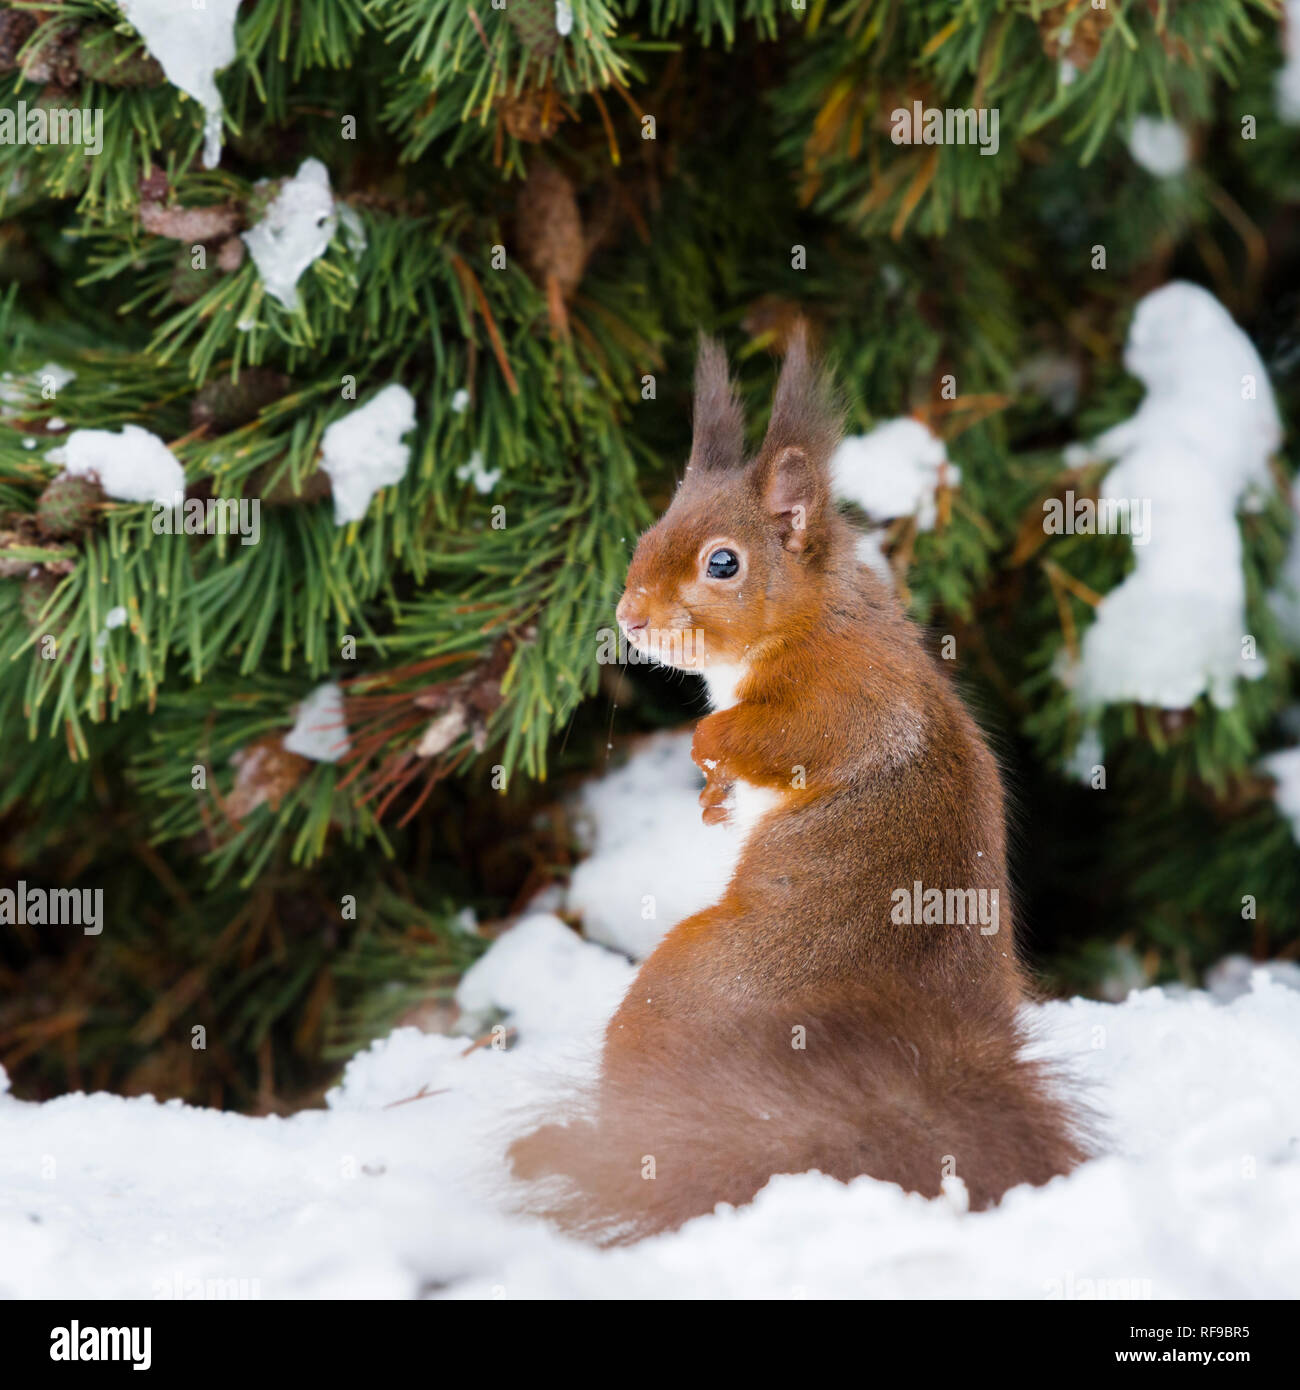 Kalte Winter mit Schnee auf den Bäumen & Eichhörnchen mit dicken Wintermantel, buschigen Schwanz & Ohrpinsel in Richtung Kamera schaut Stockfoto